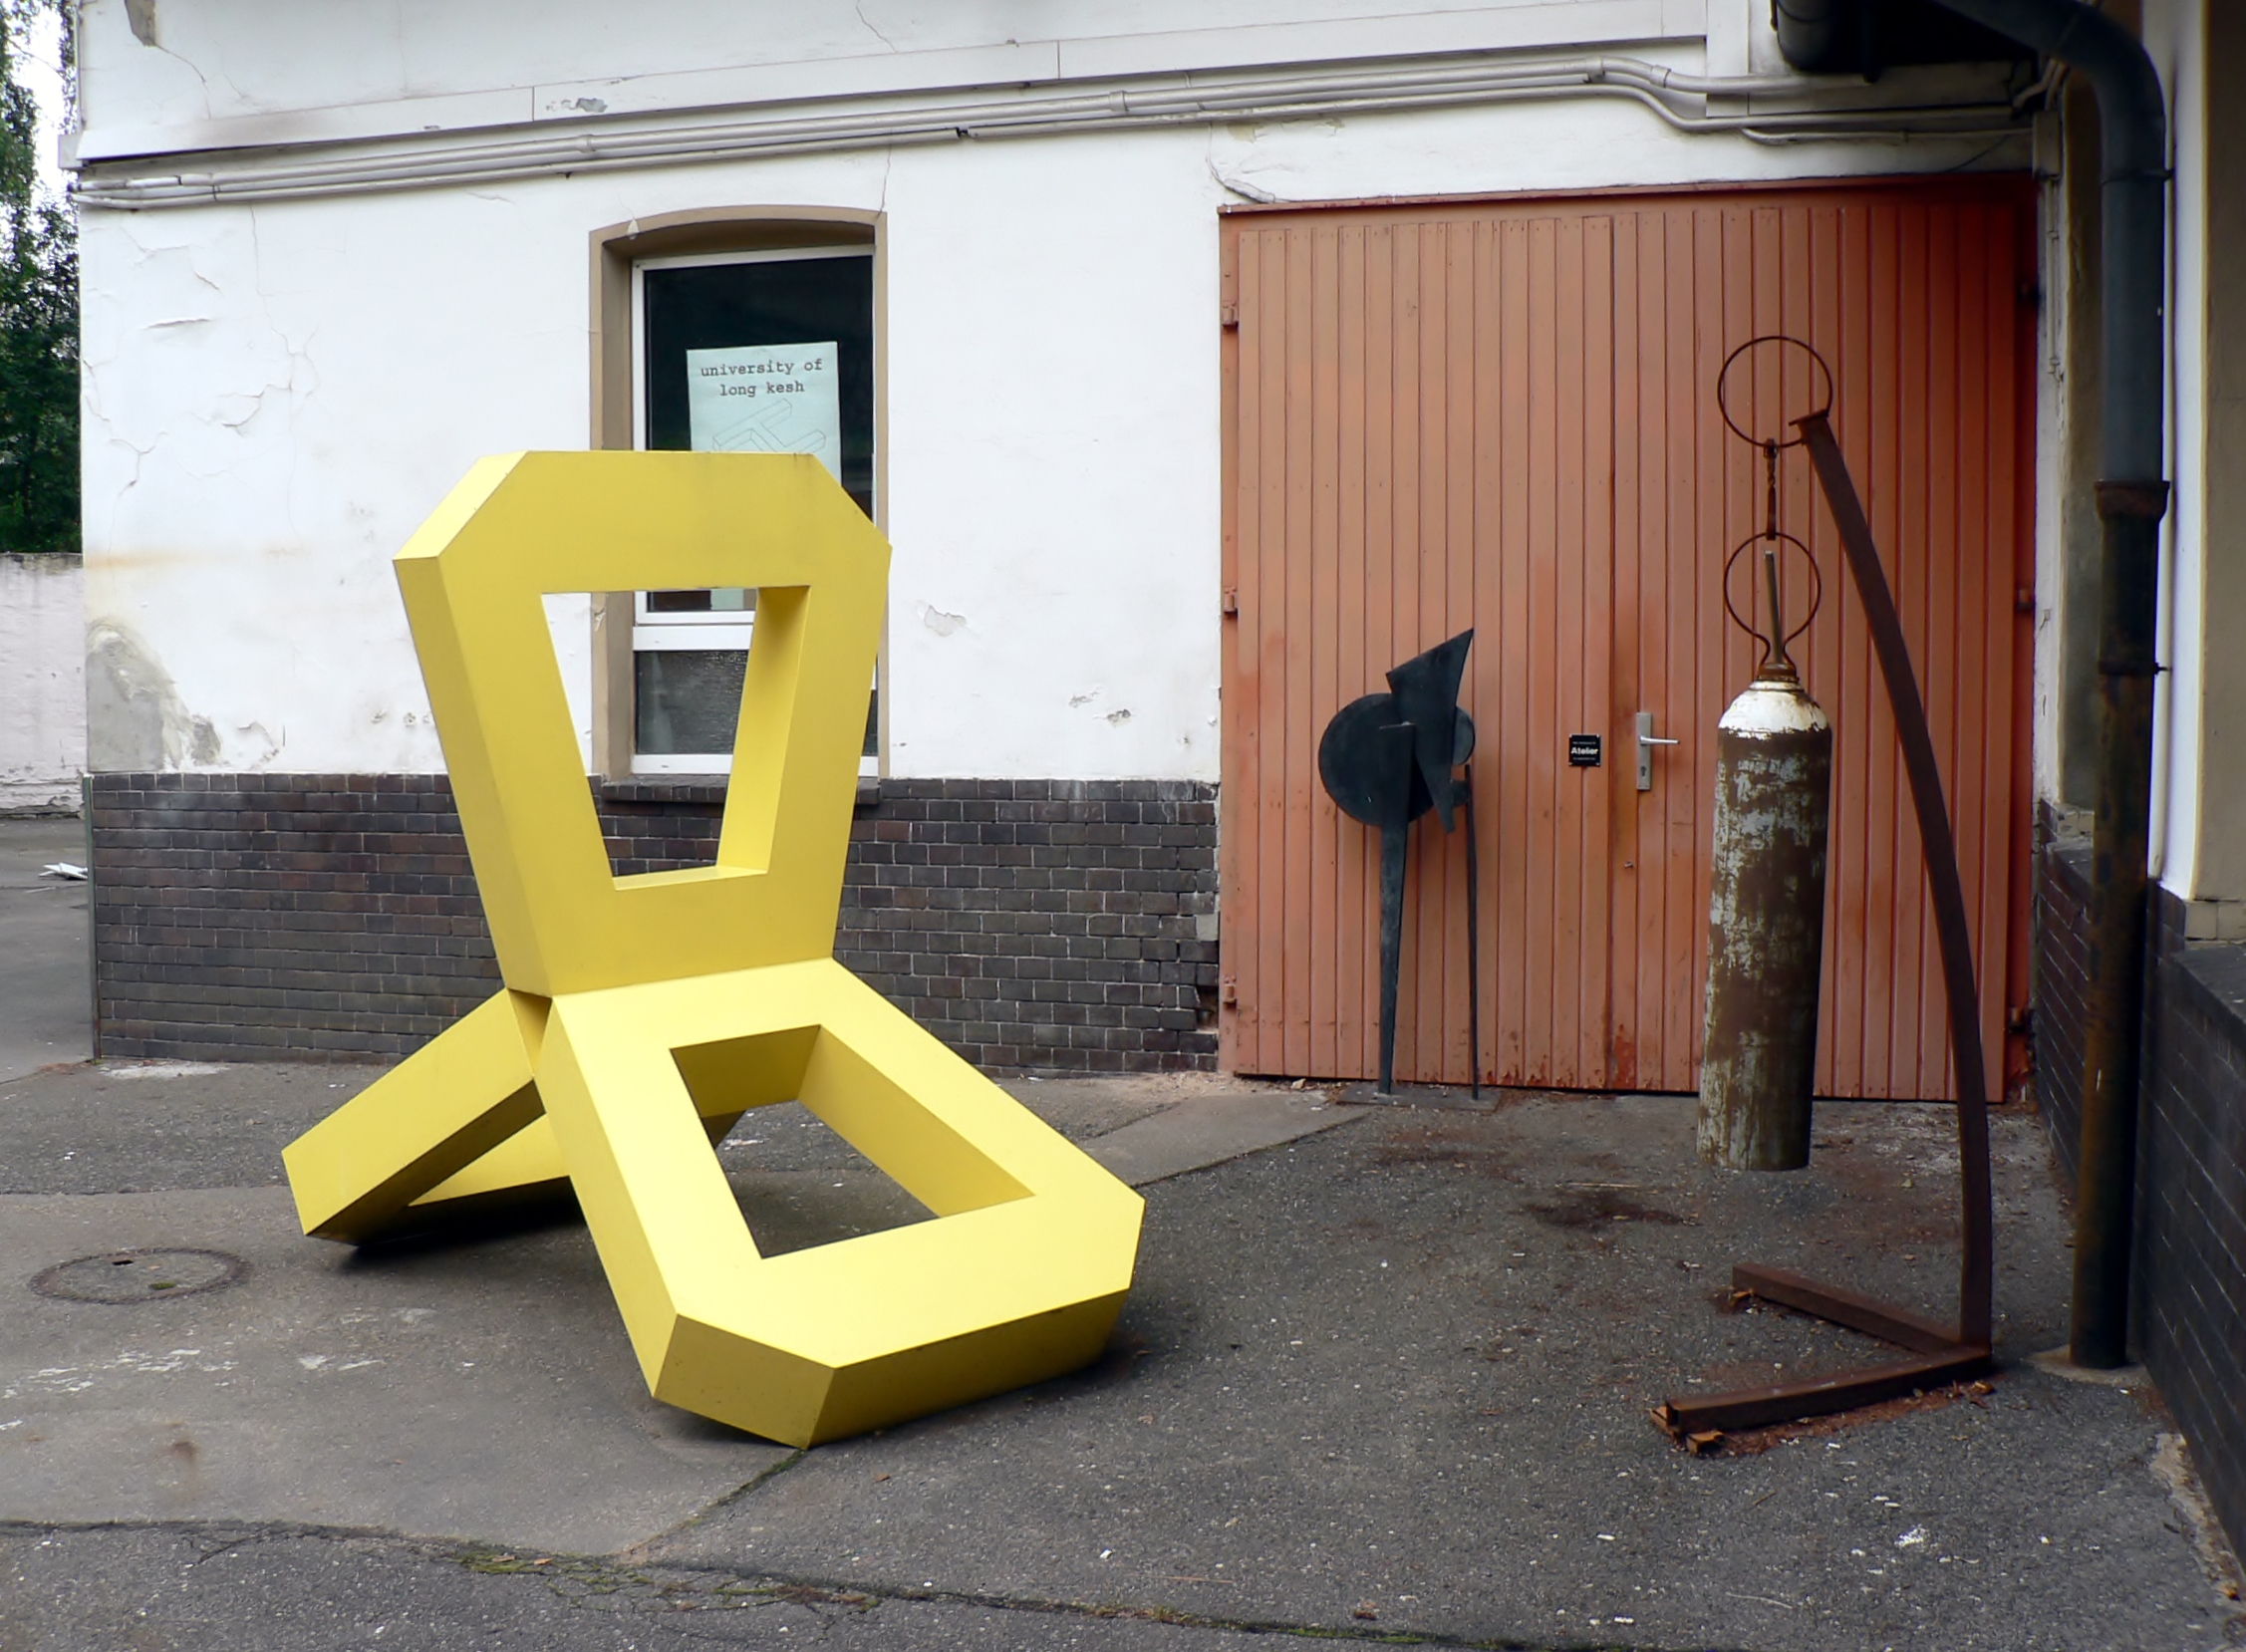 Kunstkosmos des Planeten Dada Post: Der Bildhauer Howard McCalebb und seine einzigartige Galerie – etwas abseits, doch inmitten des Berliner Kunstuniversums